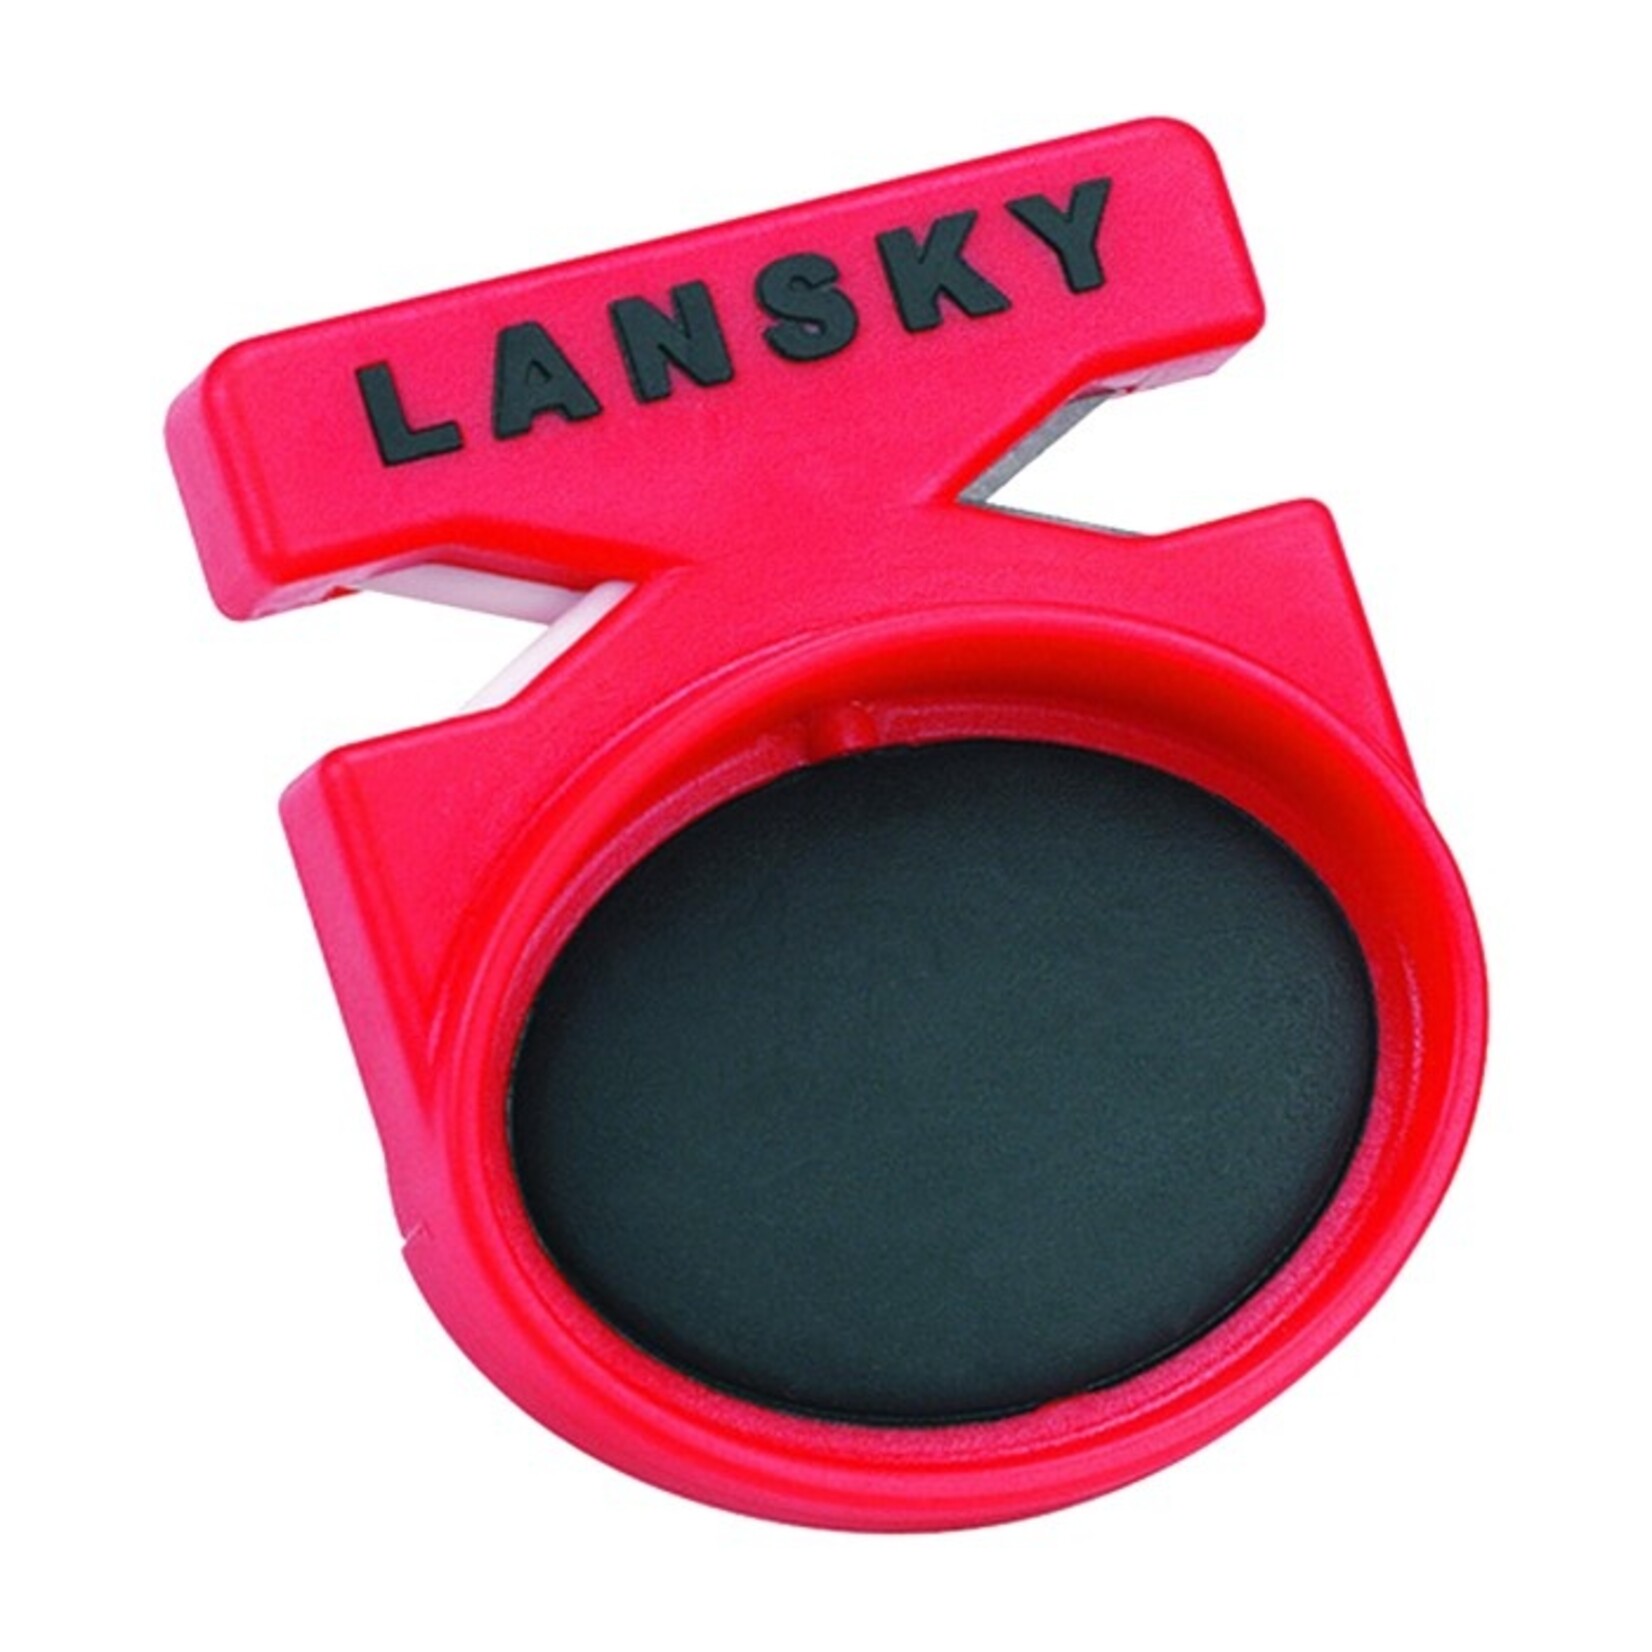 Lansky Lansky Quick Fix Sharpener w/Tungsten Carbide